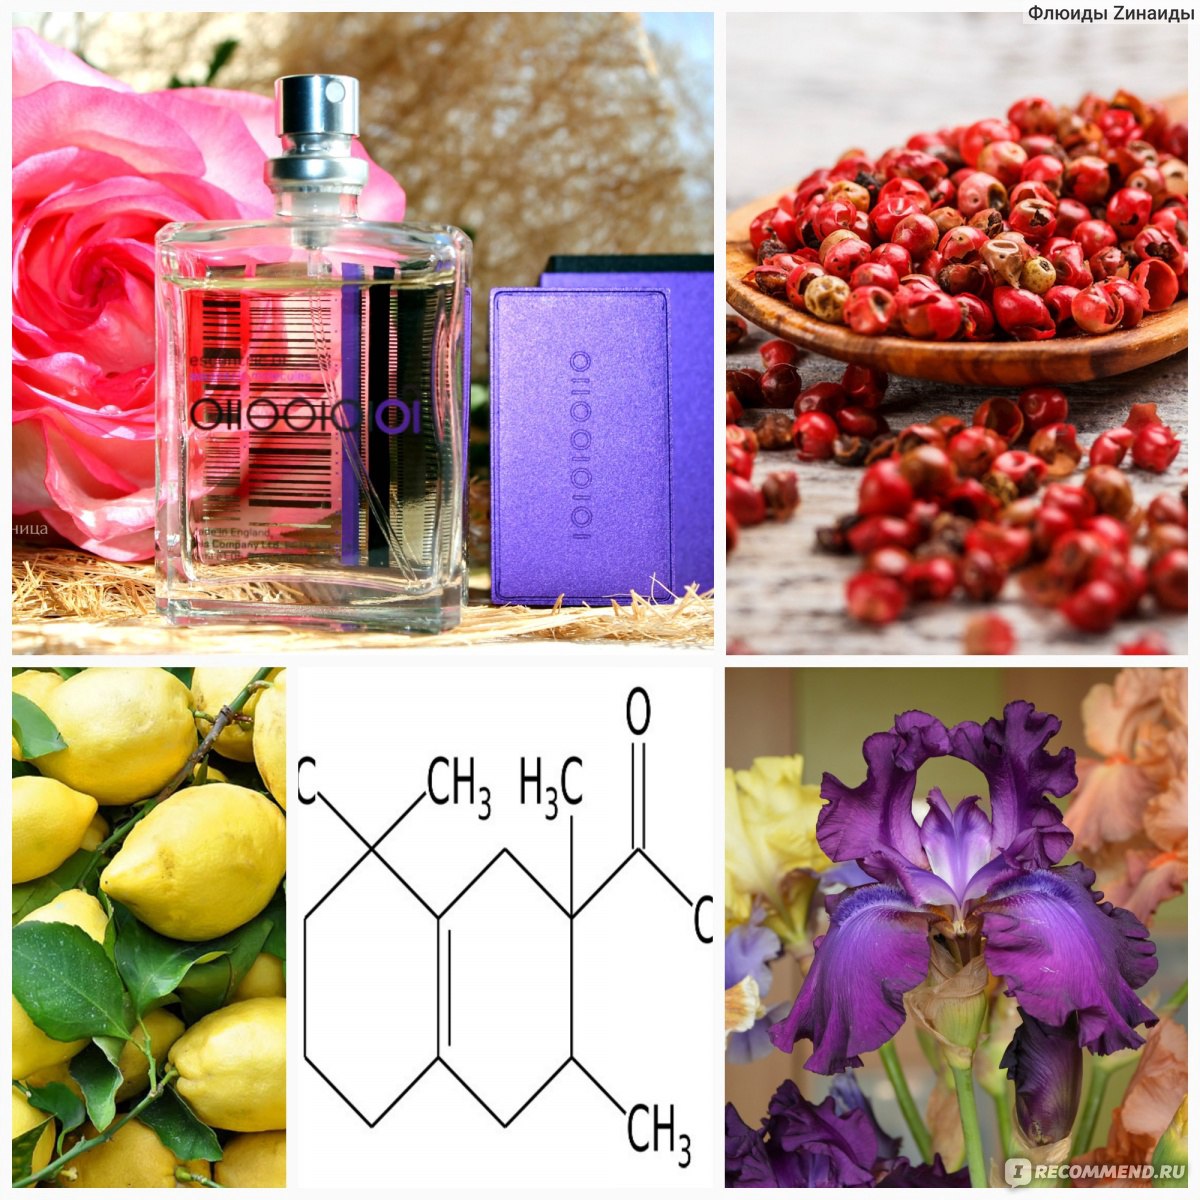 Цветочные Ноты в парфюмерии